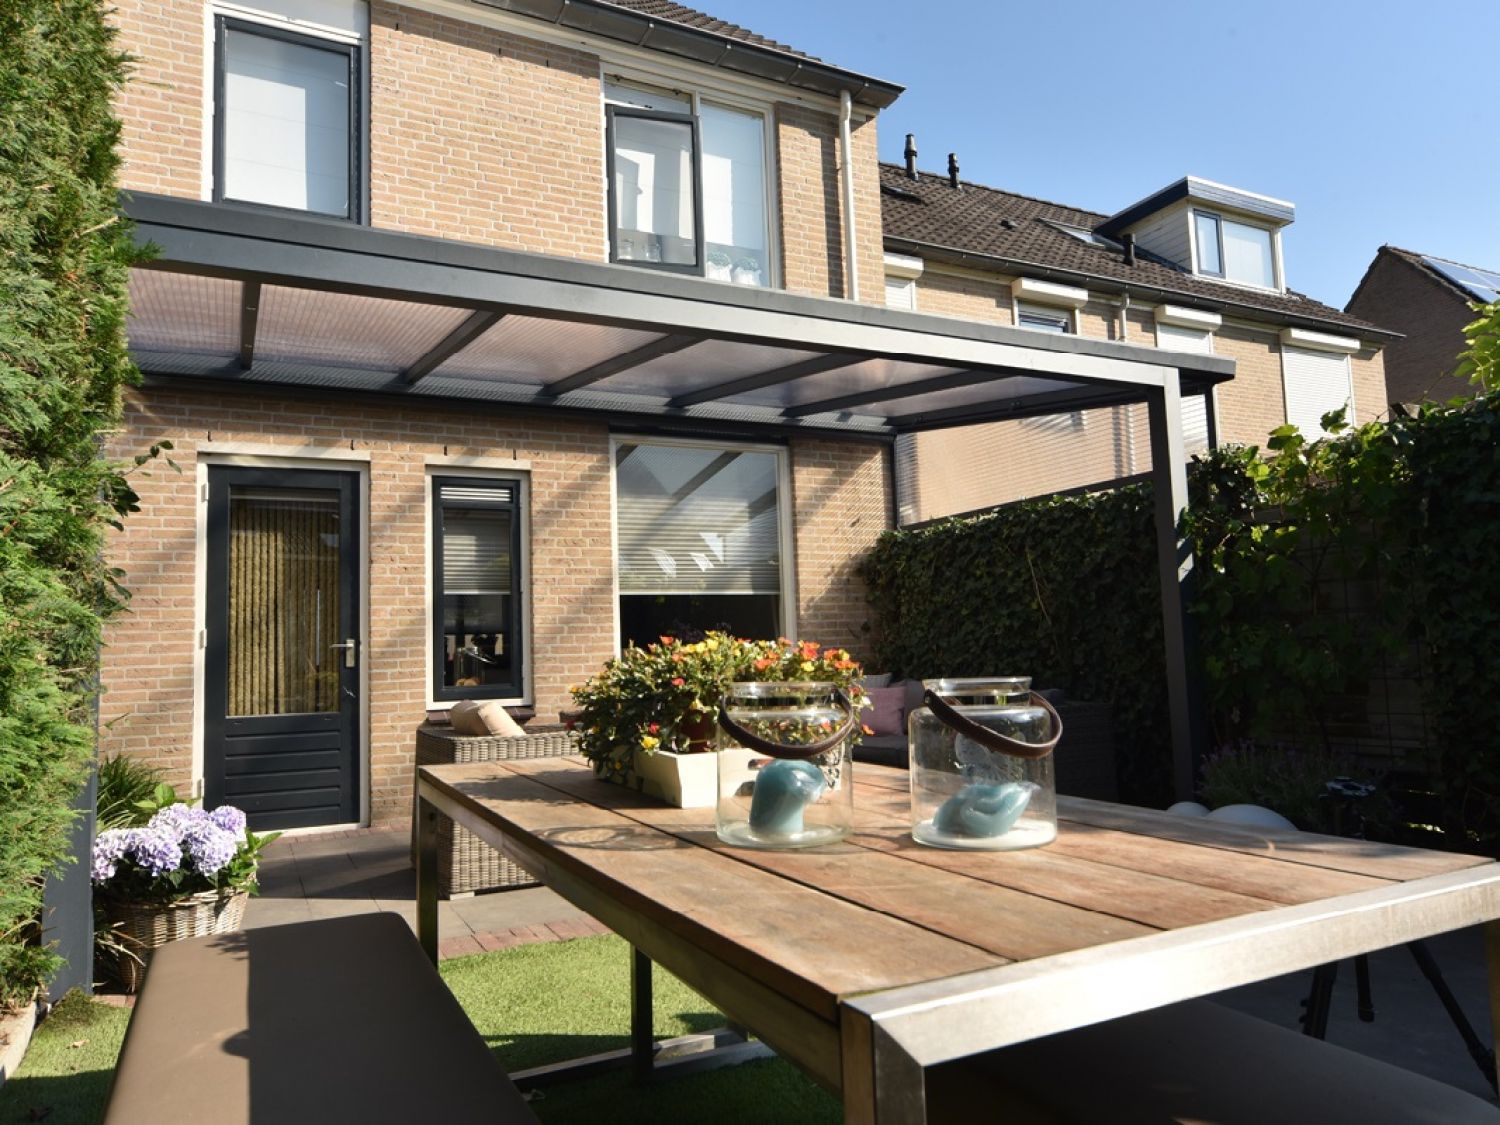 Greenline veranda 600x350 cm - 2 staanders - polycarbonaat dak